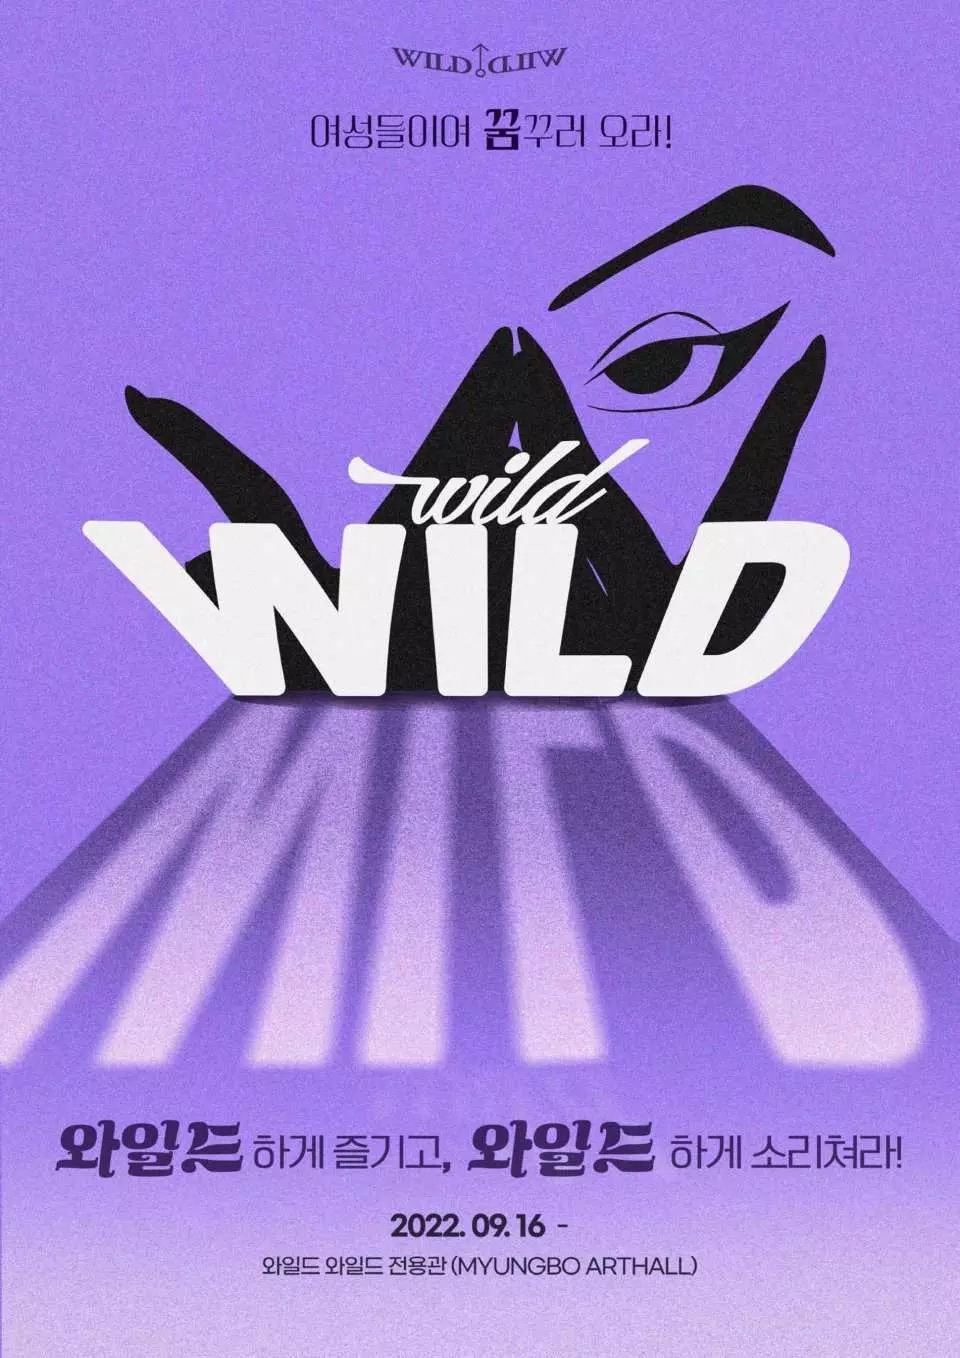 【韓國猛男秀】2023全新韓國猛男秀門票優惠Wild Wild Dream 首爾猛男秀音樂劇 @GINA環球旅行生活